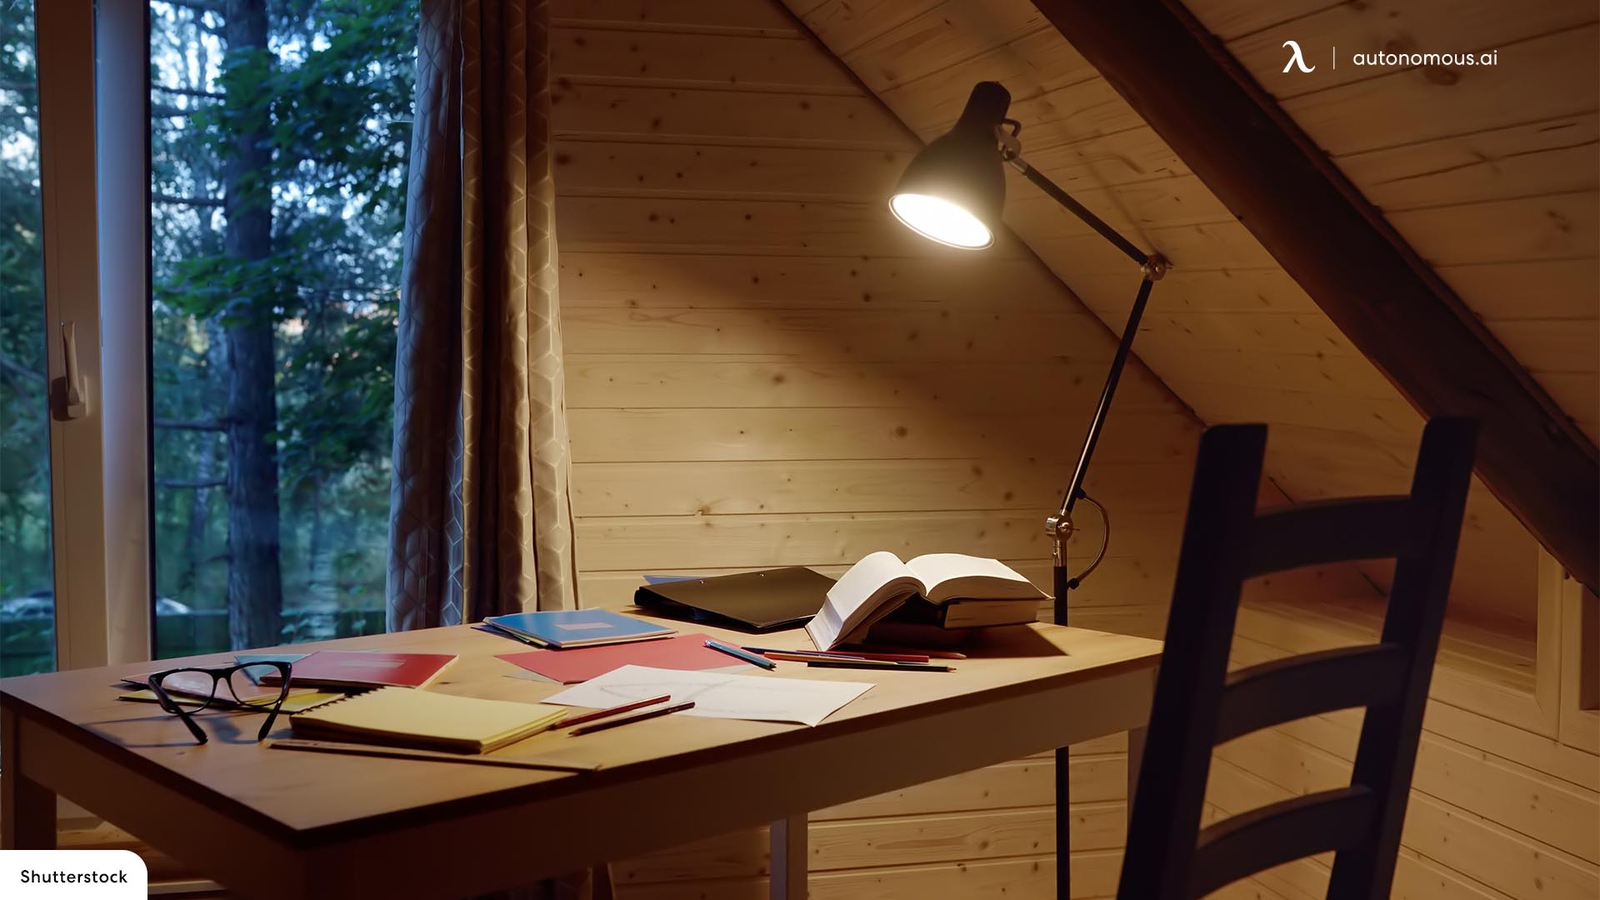 The 10 Best LED Floor Light for Reading